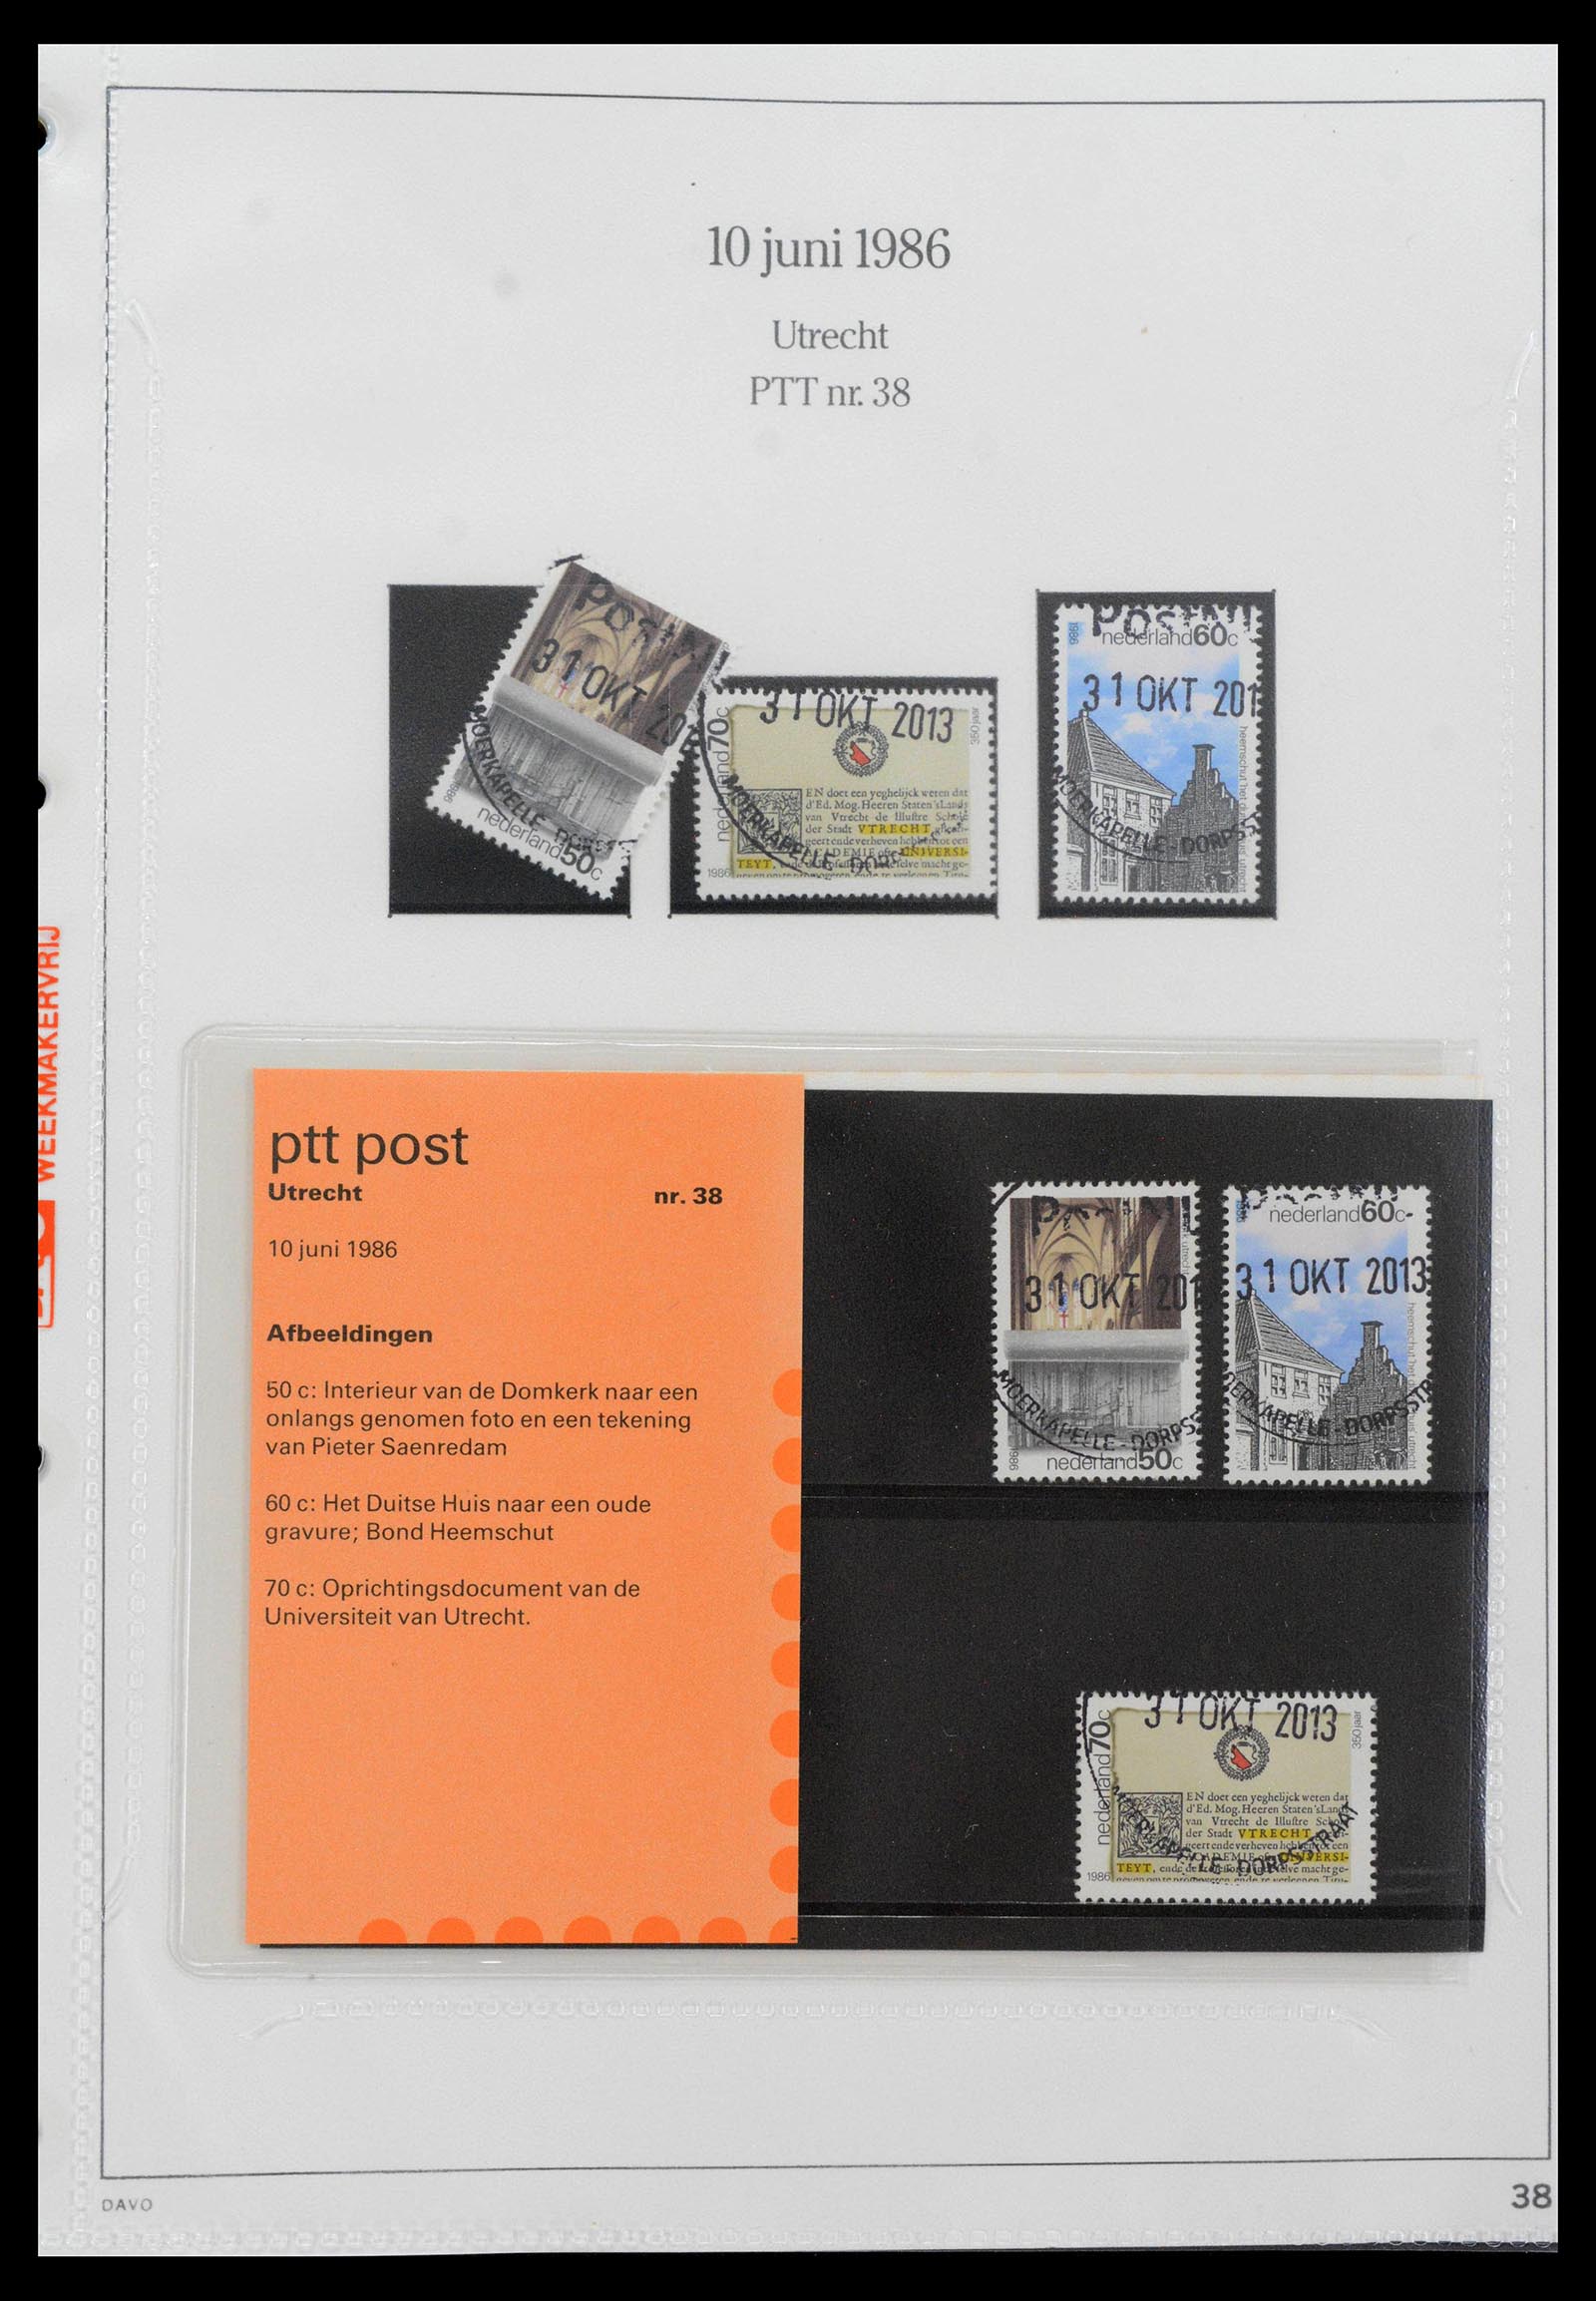 39121 0038 - Stamp collection 39121 Netherlands presentationpacks 1982-2001.